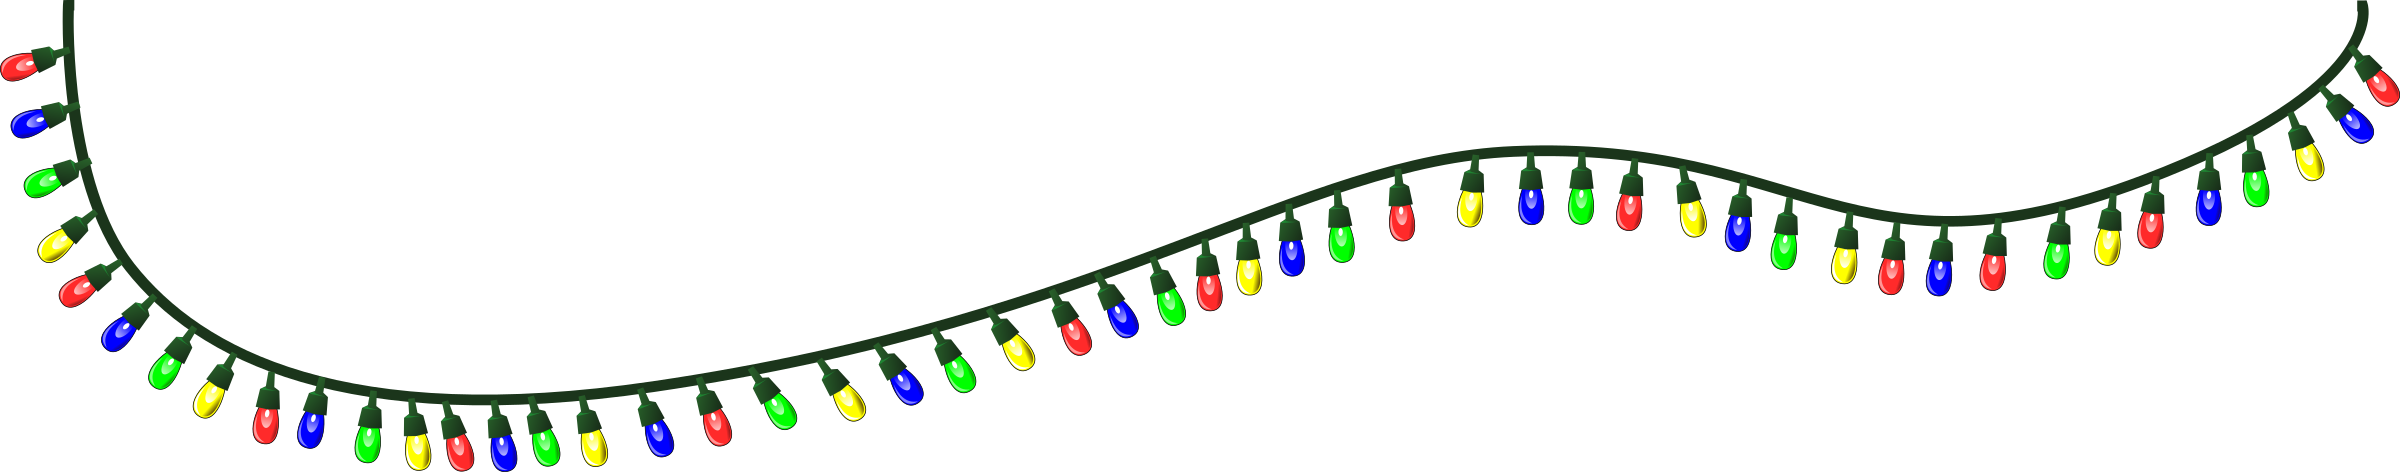 Christmas Lights Transparent Background PNG Image